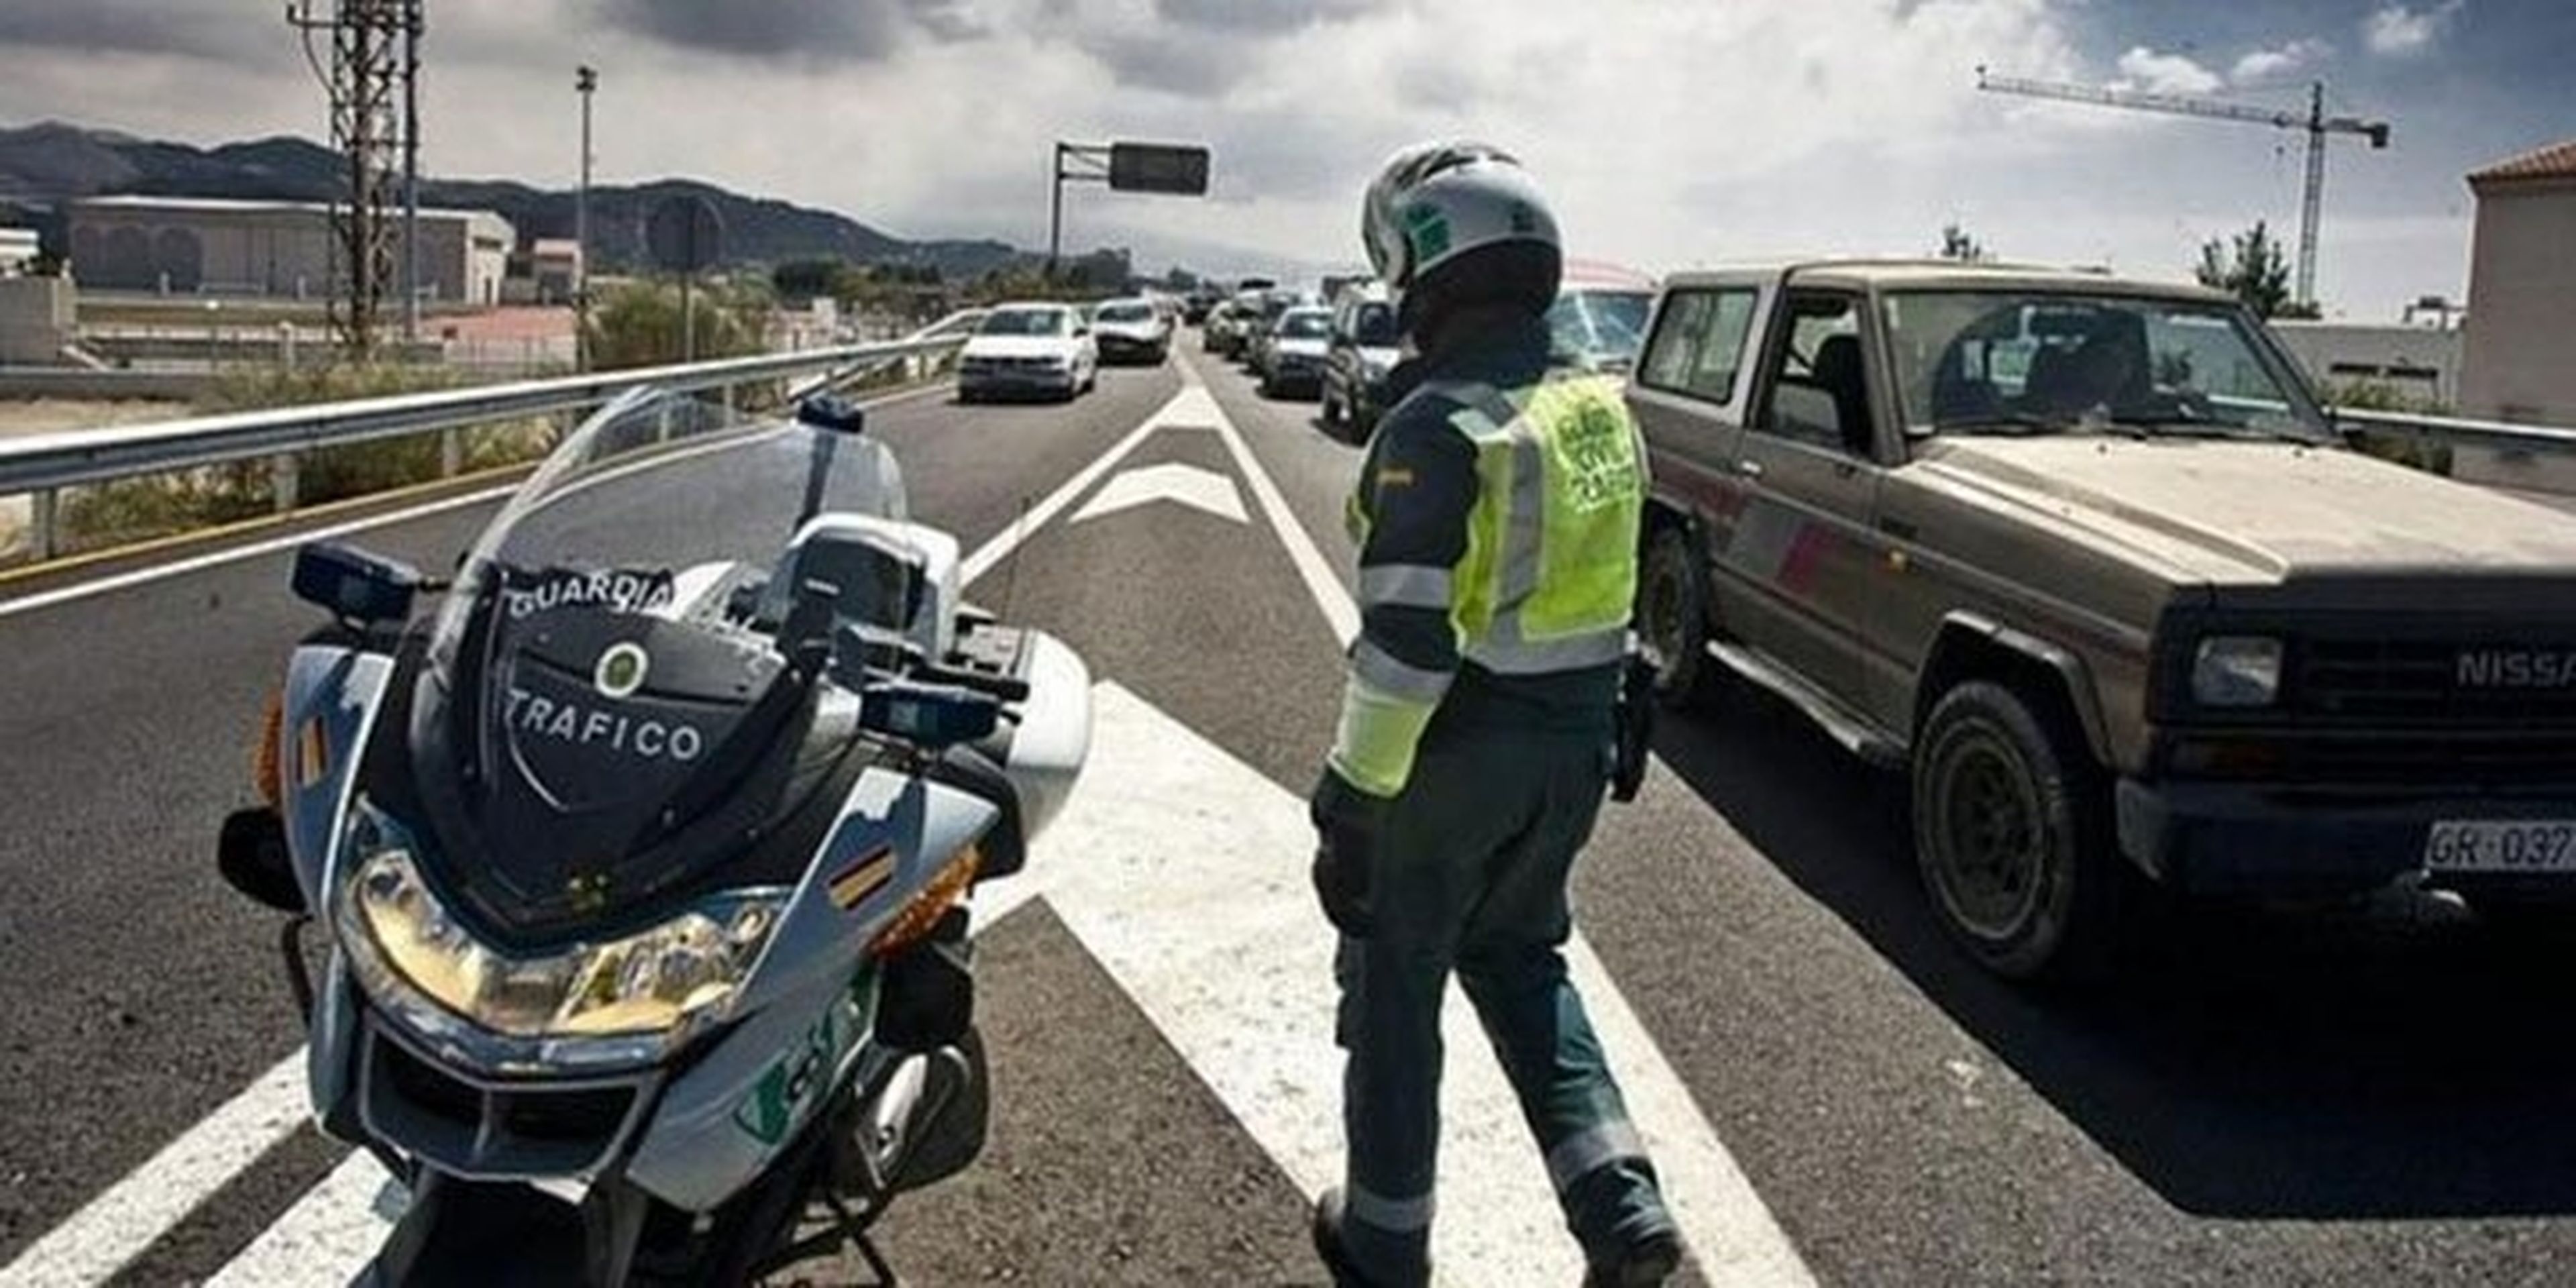 Medidas que propone la Guardia Civil de Tráfico para reducir accidentes